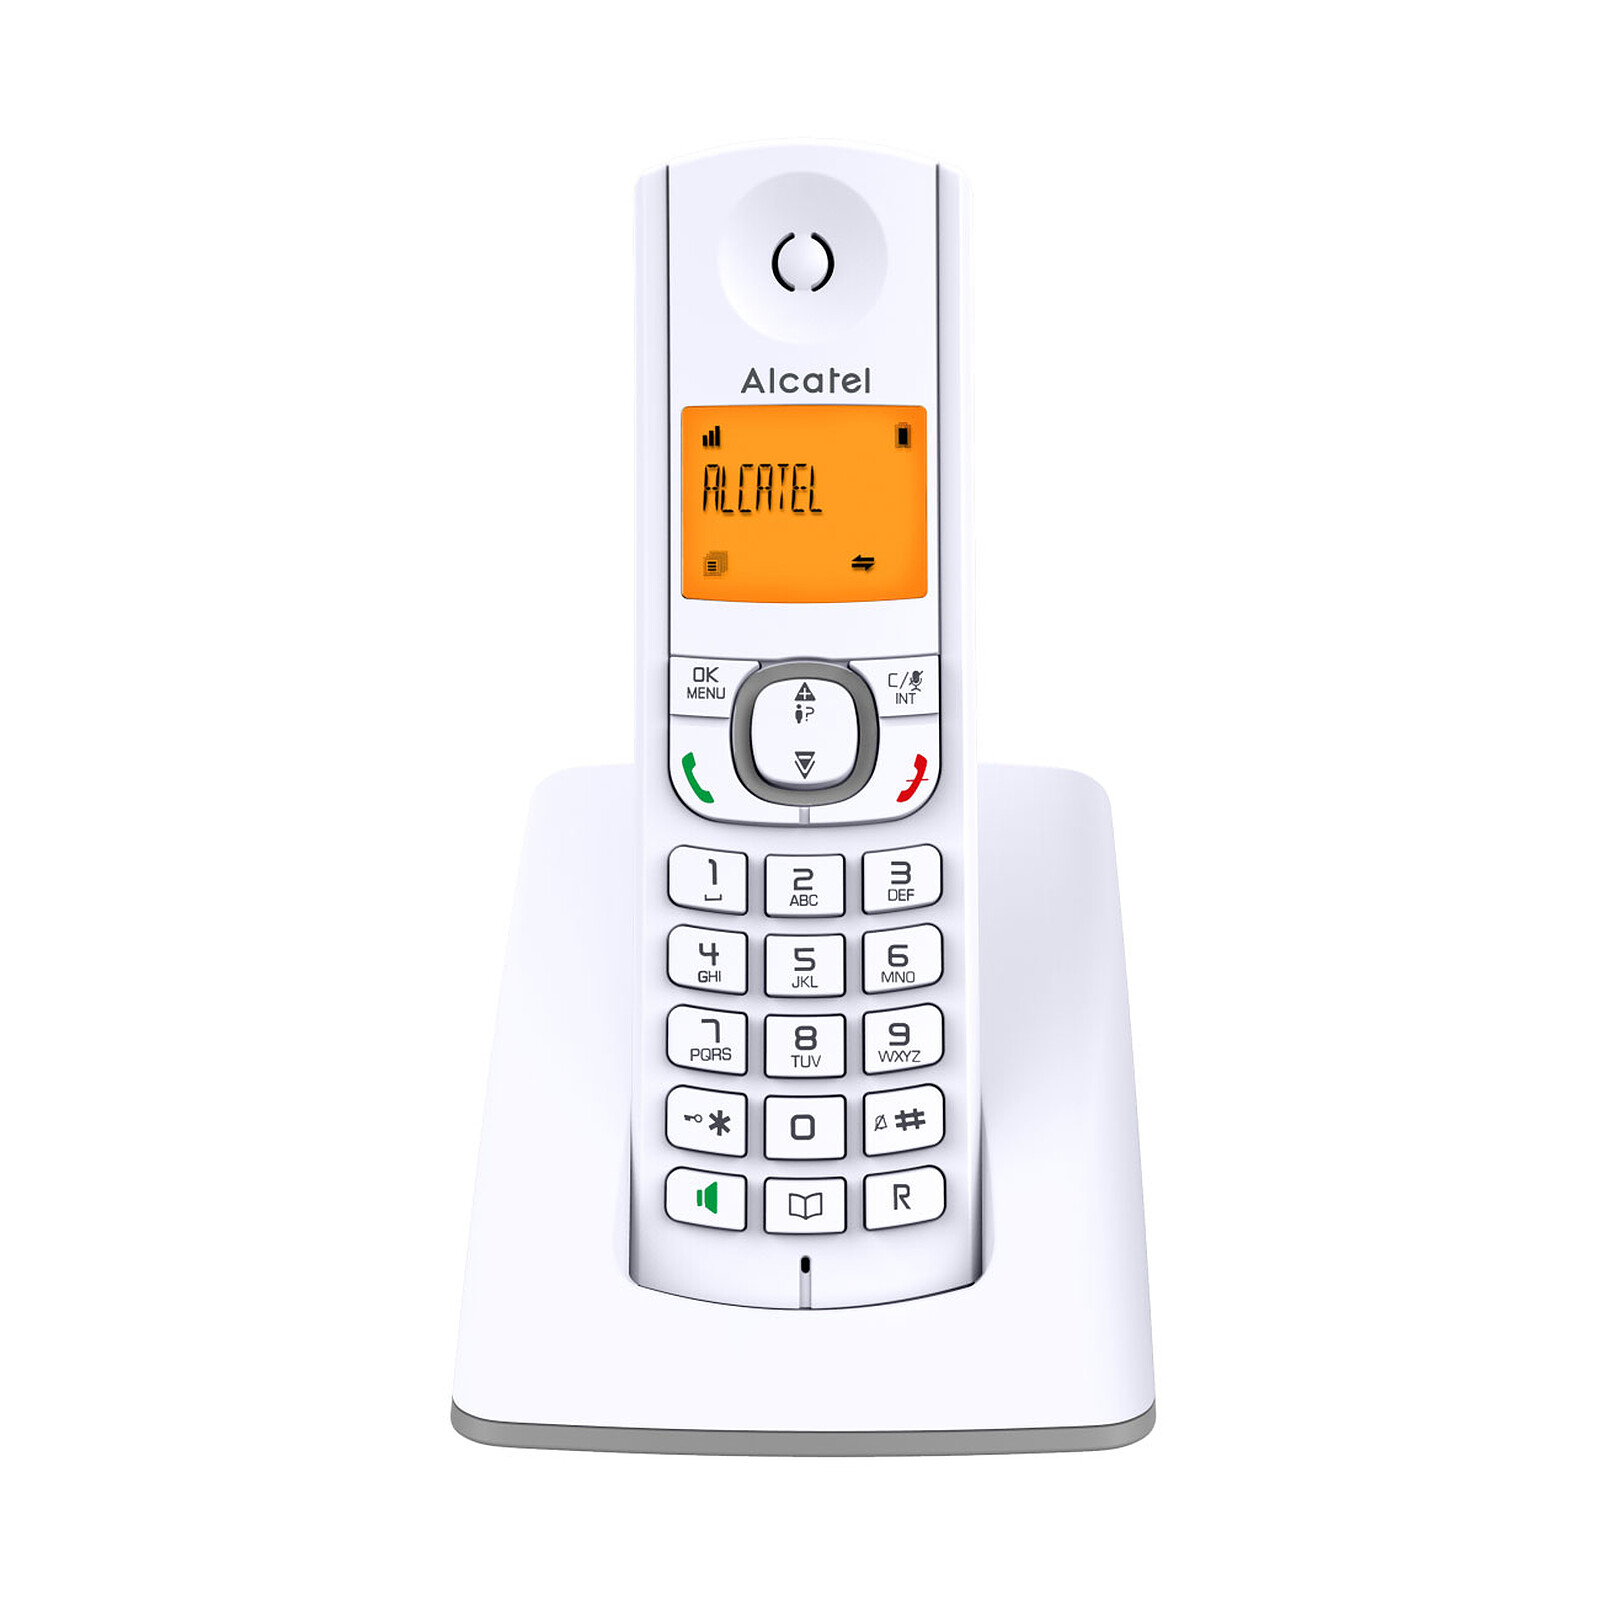 Téléphone fixe sans fil avec répondeur ALCATEL F530 VOICE DUO GREY